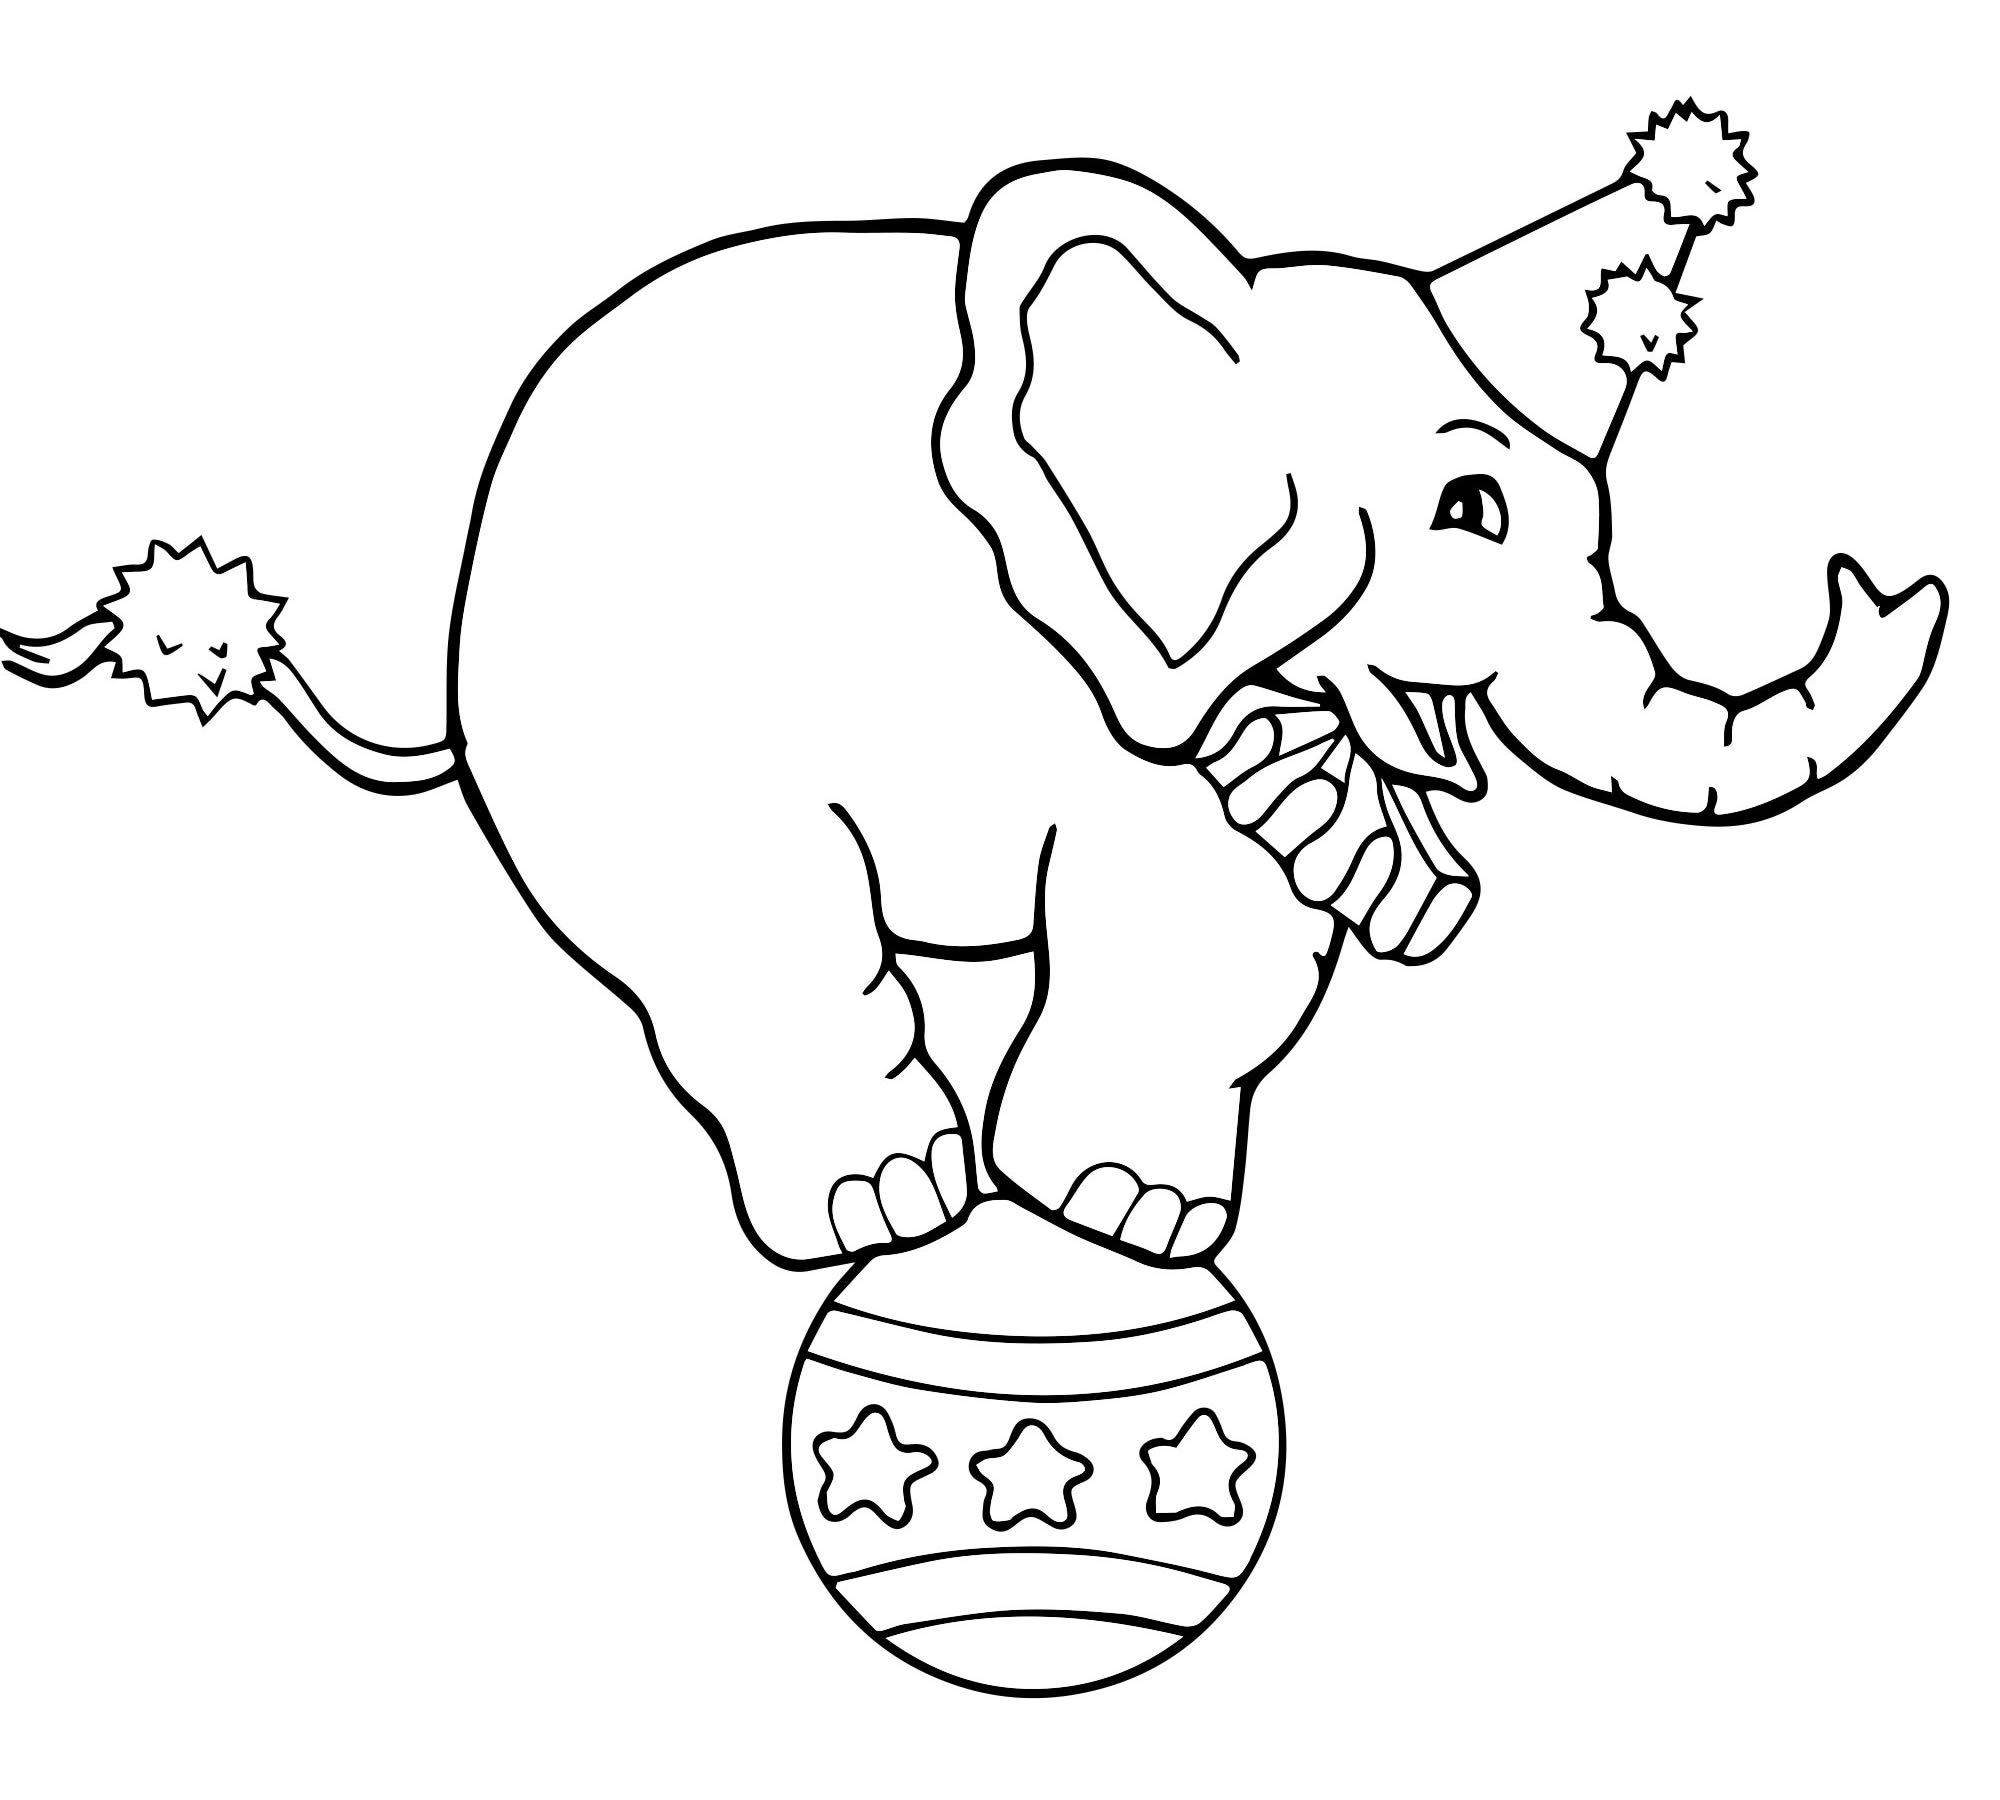 Цирковой слон раскраска для детей